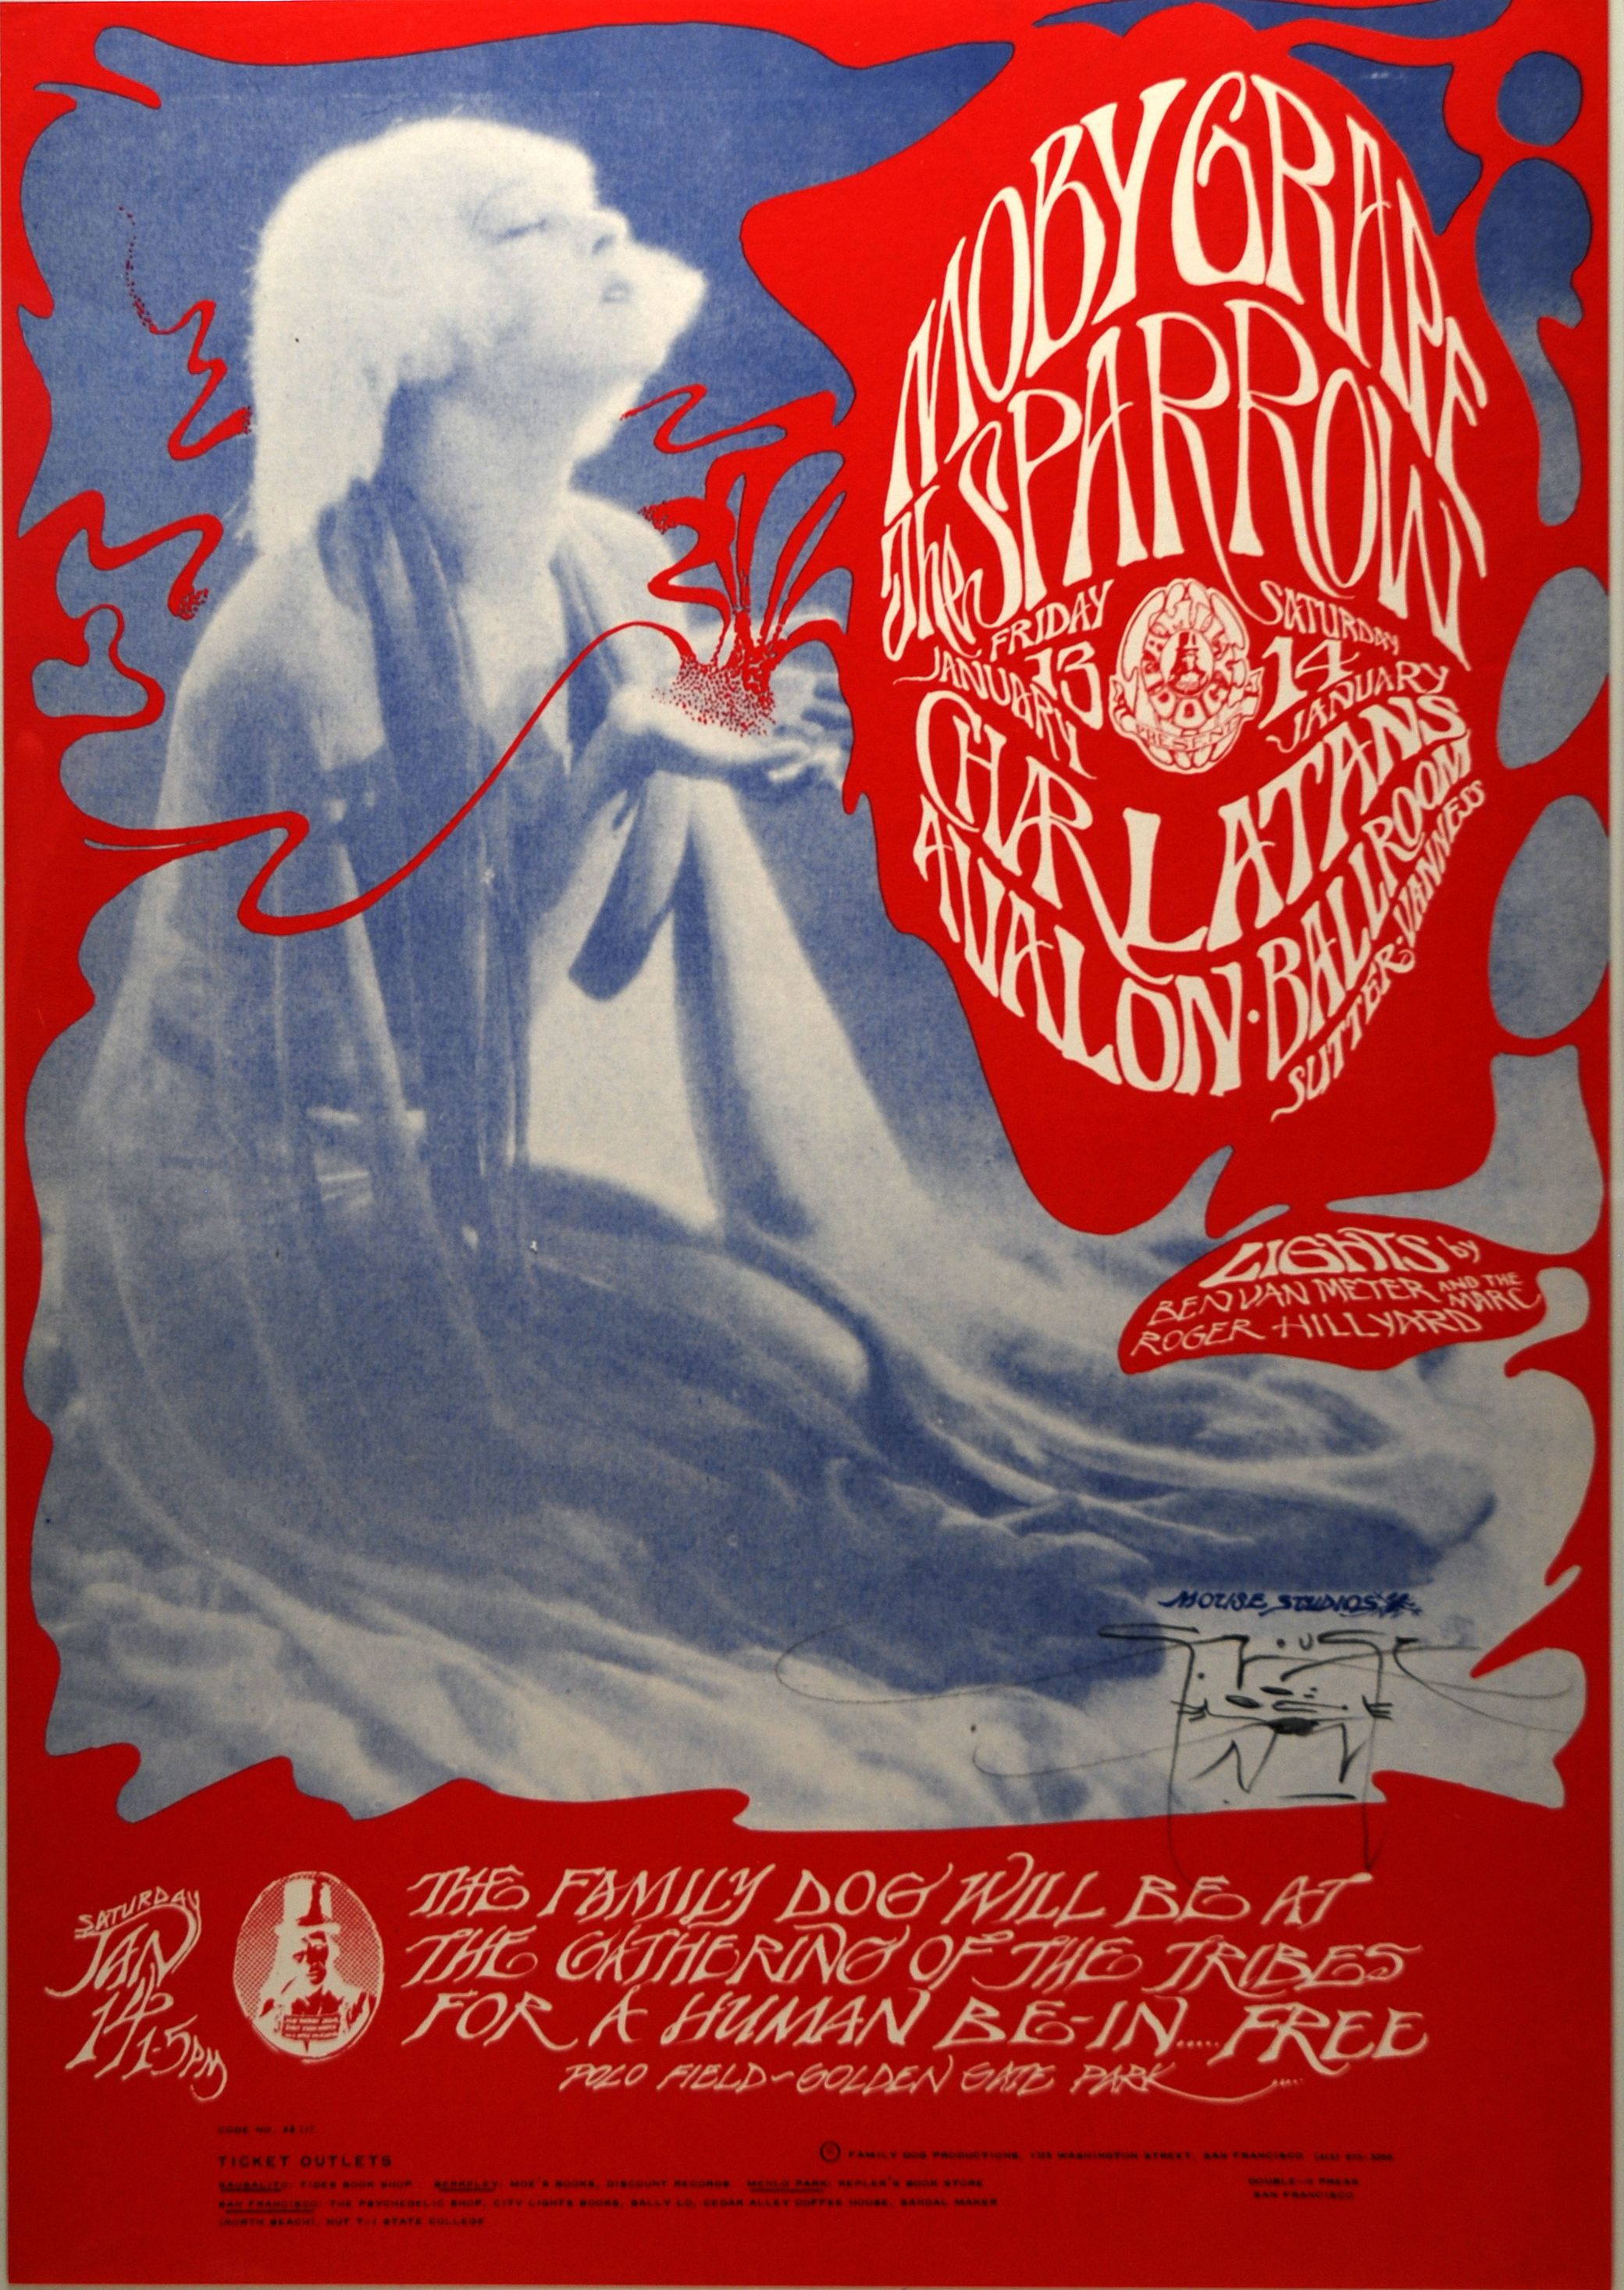 FD-43-OP-1 Concert Poster